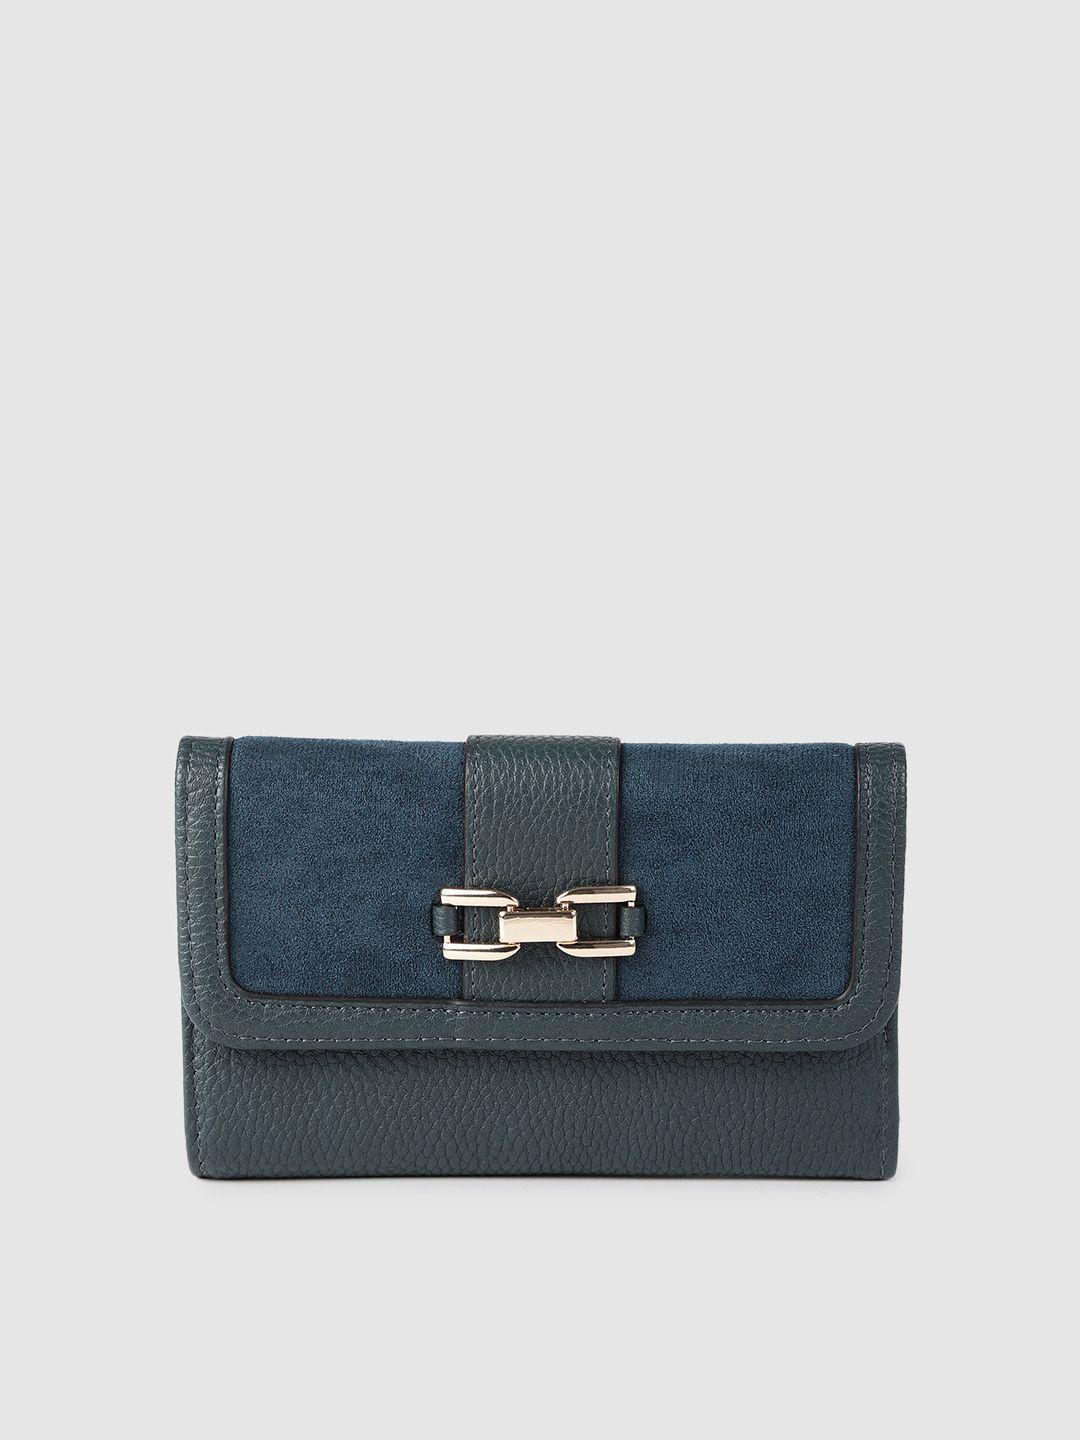 accessorize women blue three fold wallet